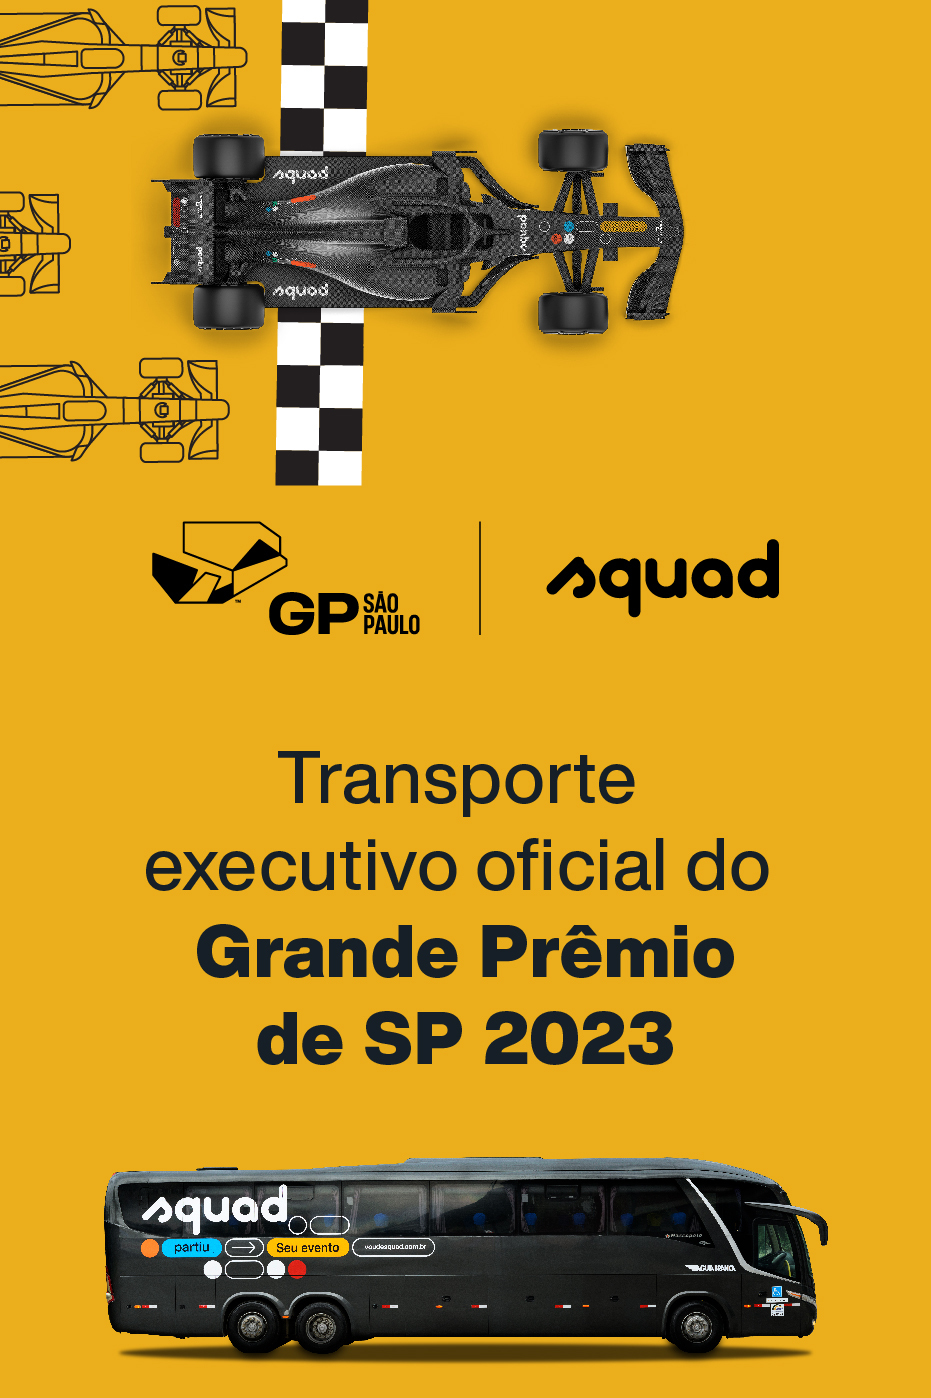 Transporte executivo oficial do Grande Prêmio de São Paulo 2023 - GPSP - SQUAD uma empresa do Grupo Águia Branca